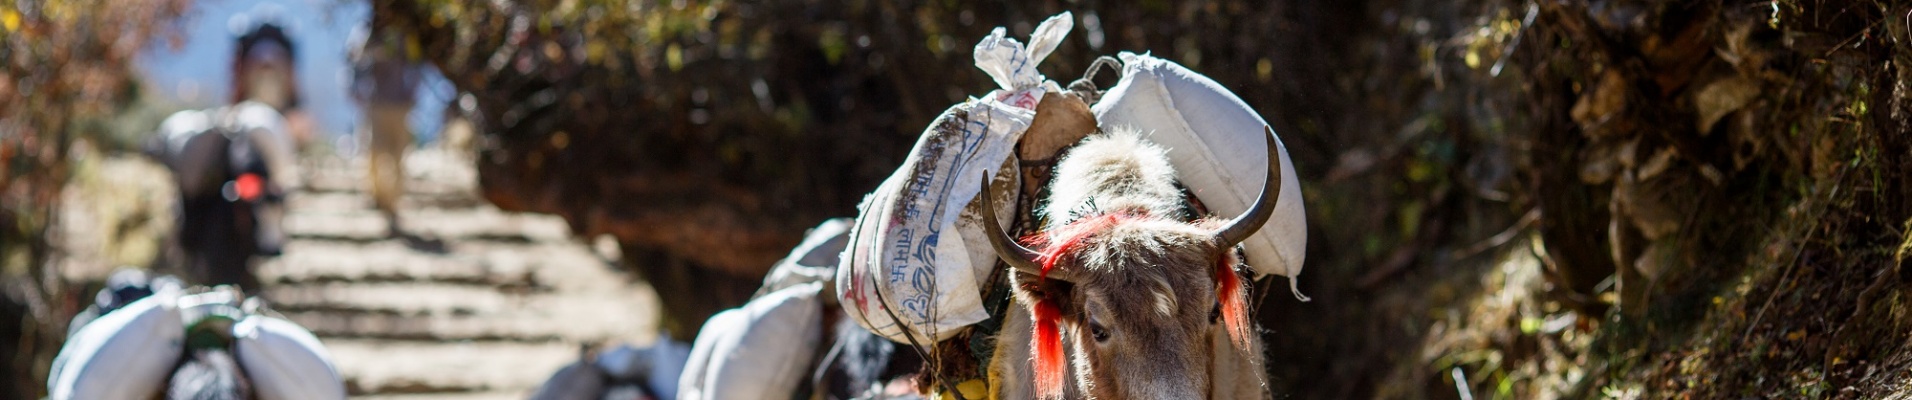 Troupeau de yaks transportant un chargement sur la route du Népal